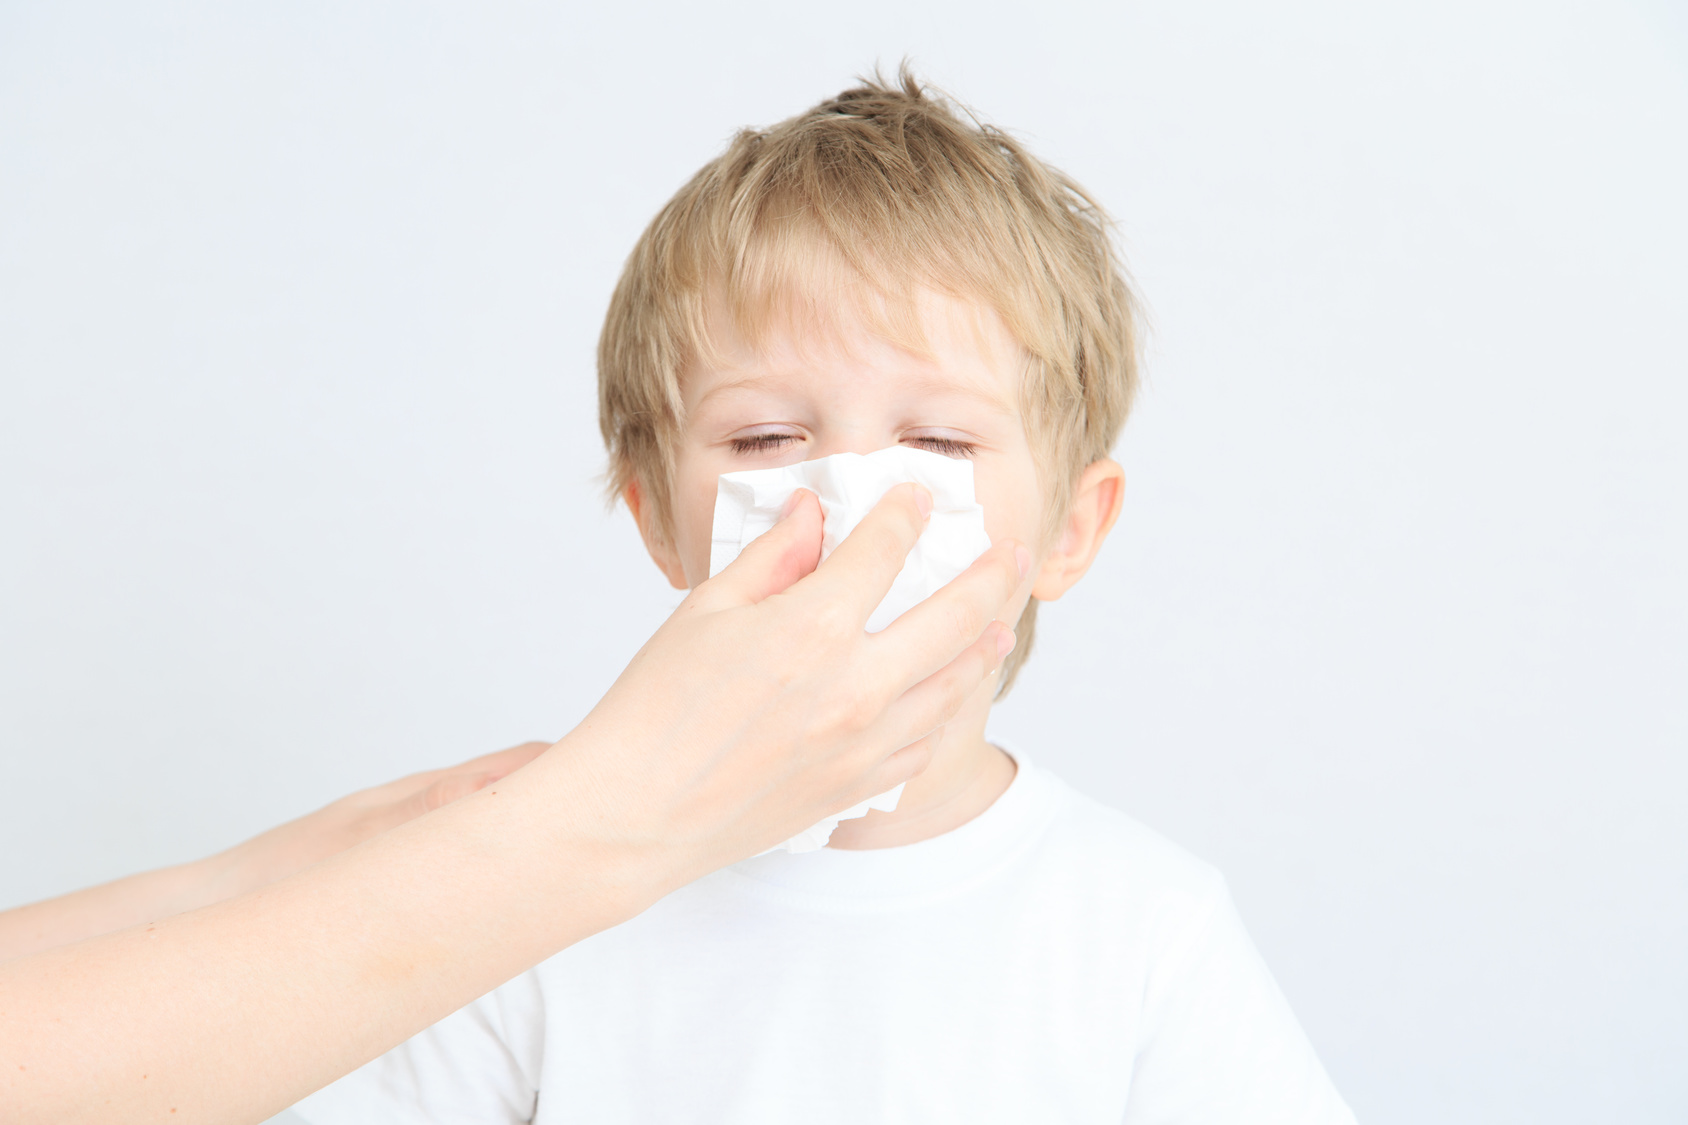 Заложенность носа 9 лет. Ребенок чихает. Чихание ребенка. Дети высмаркиваются. Вытирает нос ребенку.